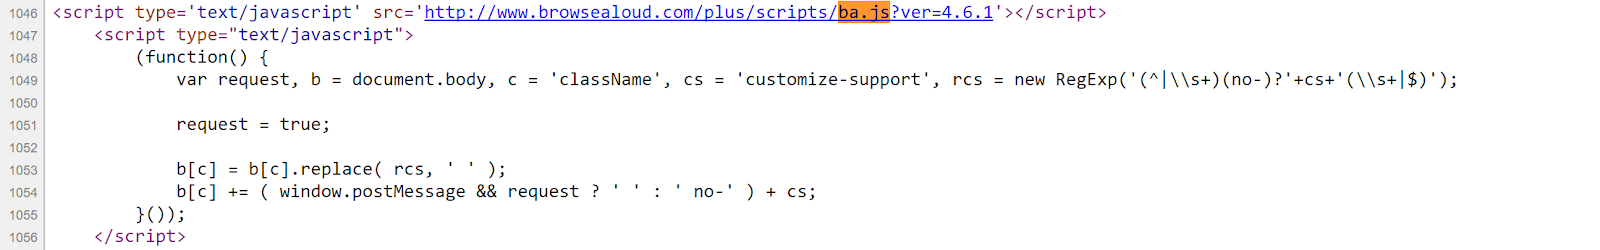 Source Code window